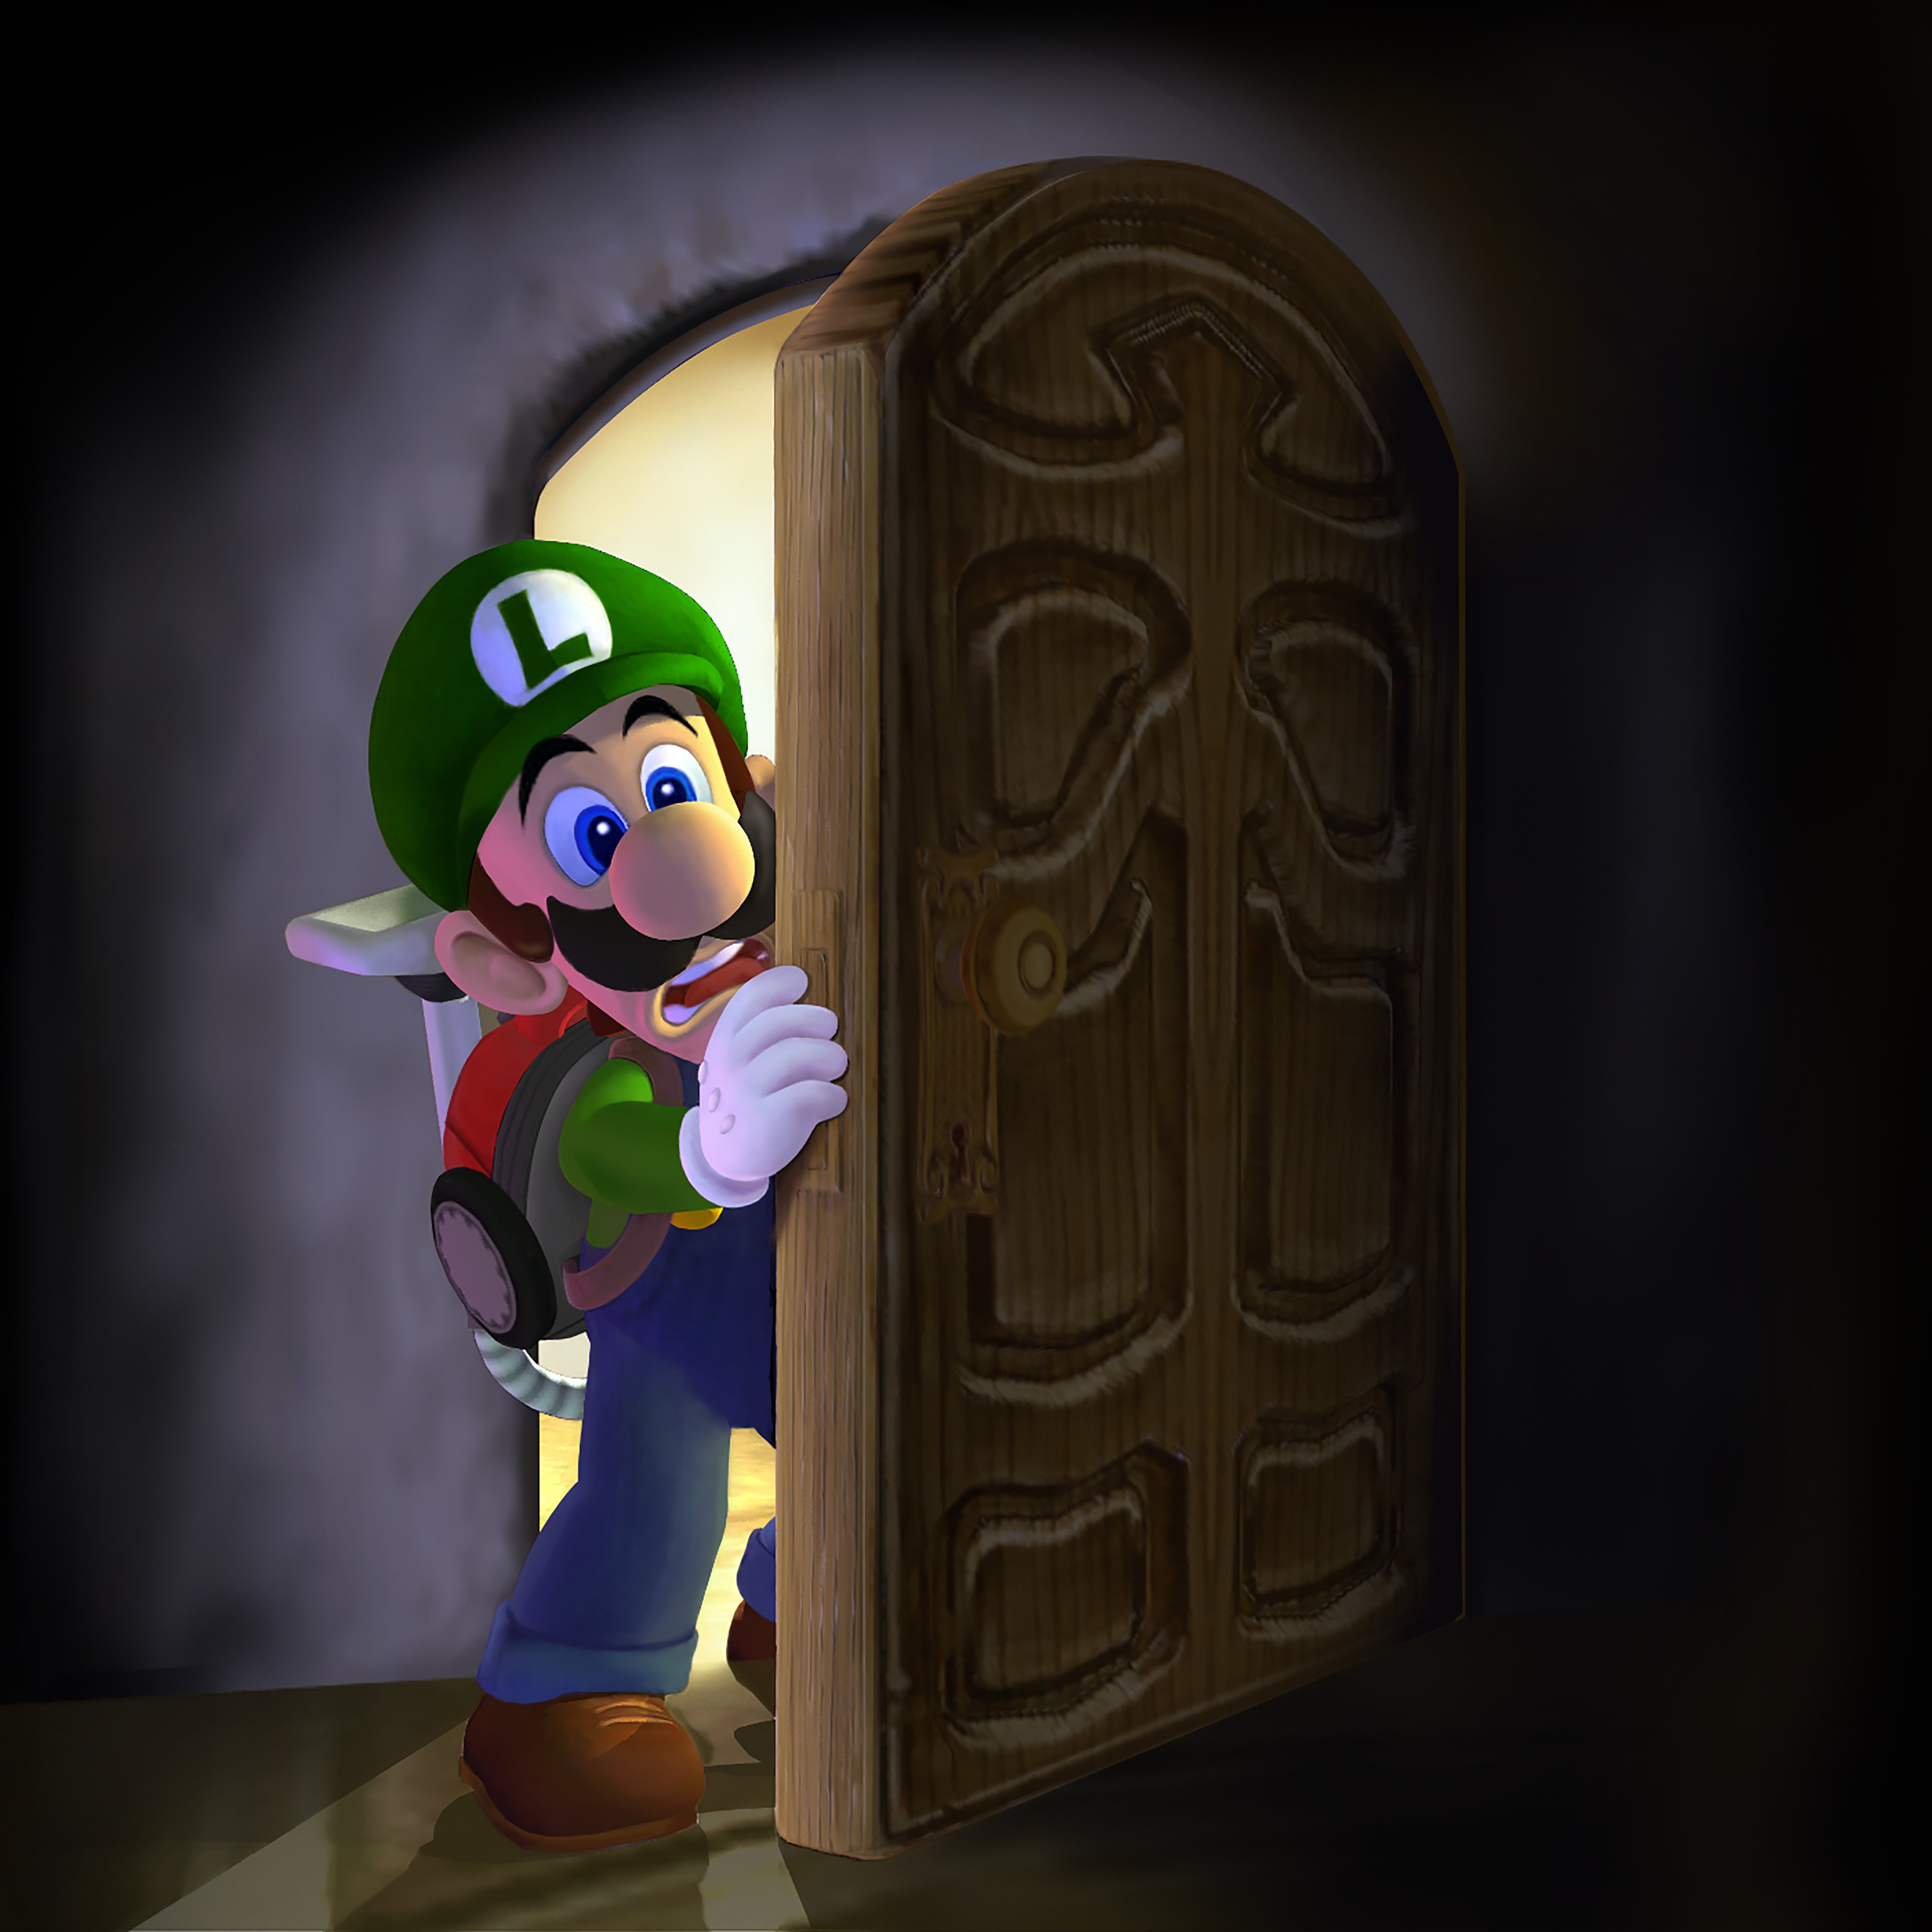 Nintendo luigi s mansion. Луиджи Мансион 1. Луиджи из Luigi s Mansion 3. Luigis Manision 1 Luigi. Luigi's Mansion [3ds].